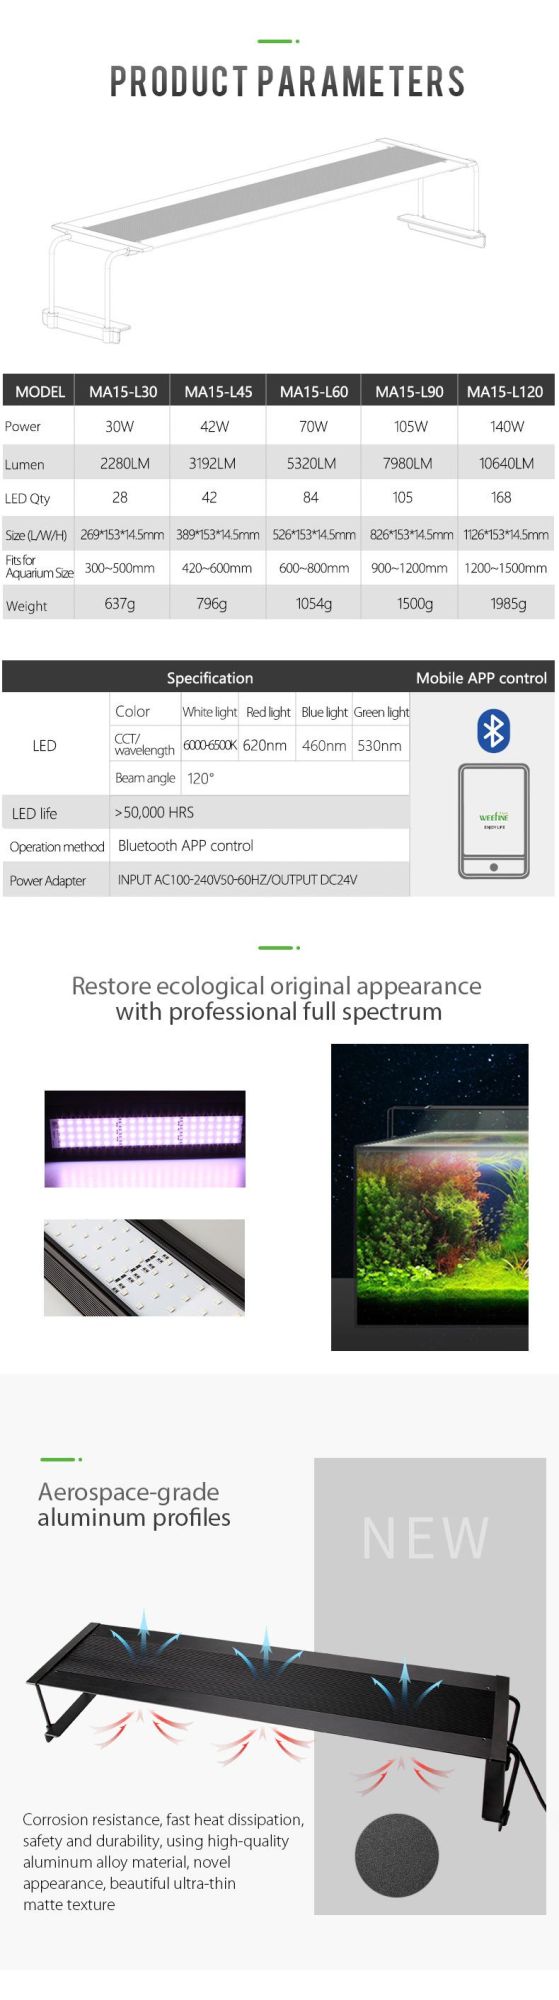 42W Wrgb Customized LED Aquarium Lights for Ultra-Thin Body Design (MA15)